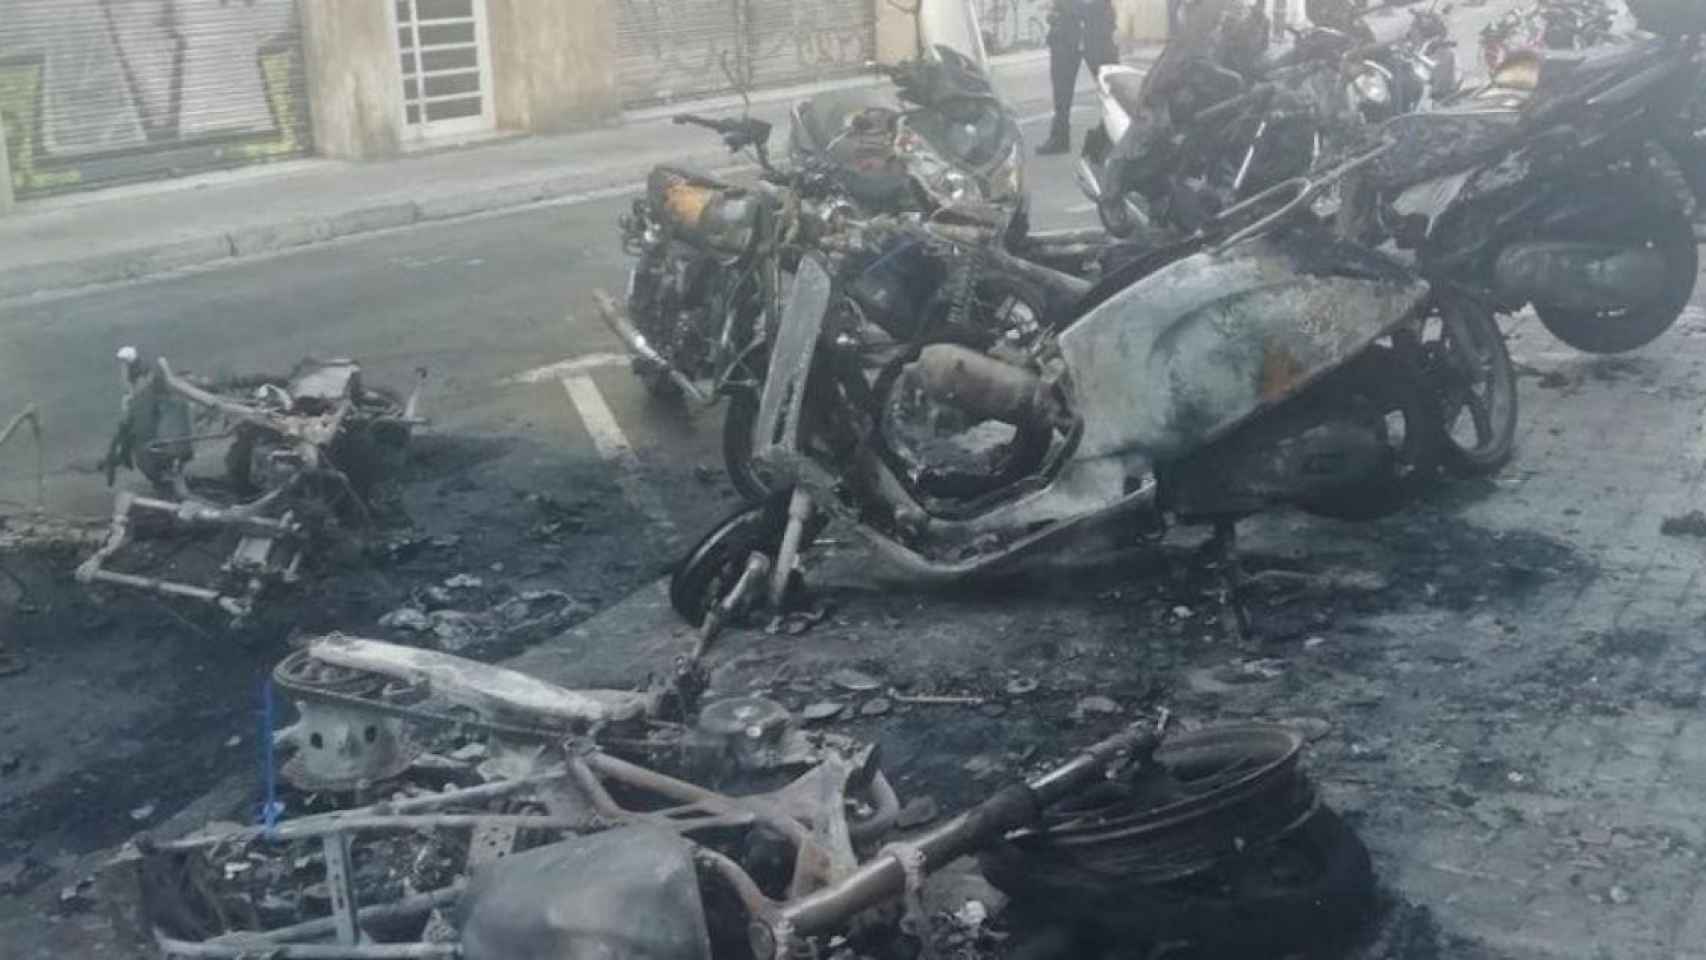 Motos quemadas tras el incendio de un contenedor en el barrio de Gràcia de Barcelona / METRÓPOLI ABIERTA